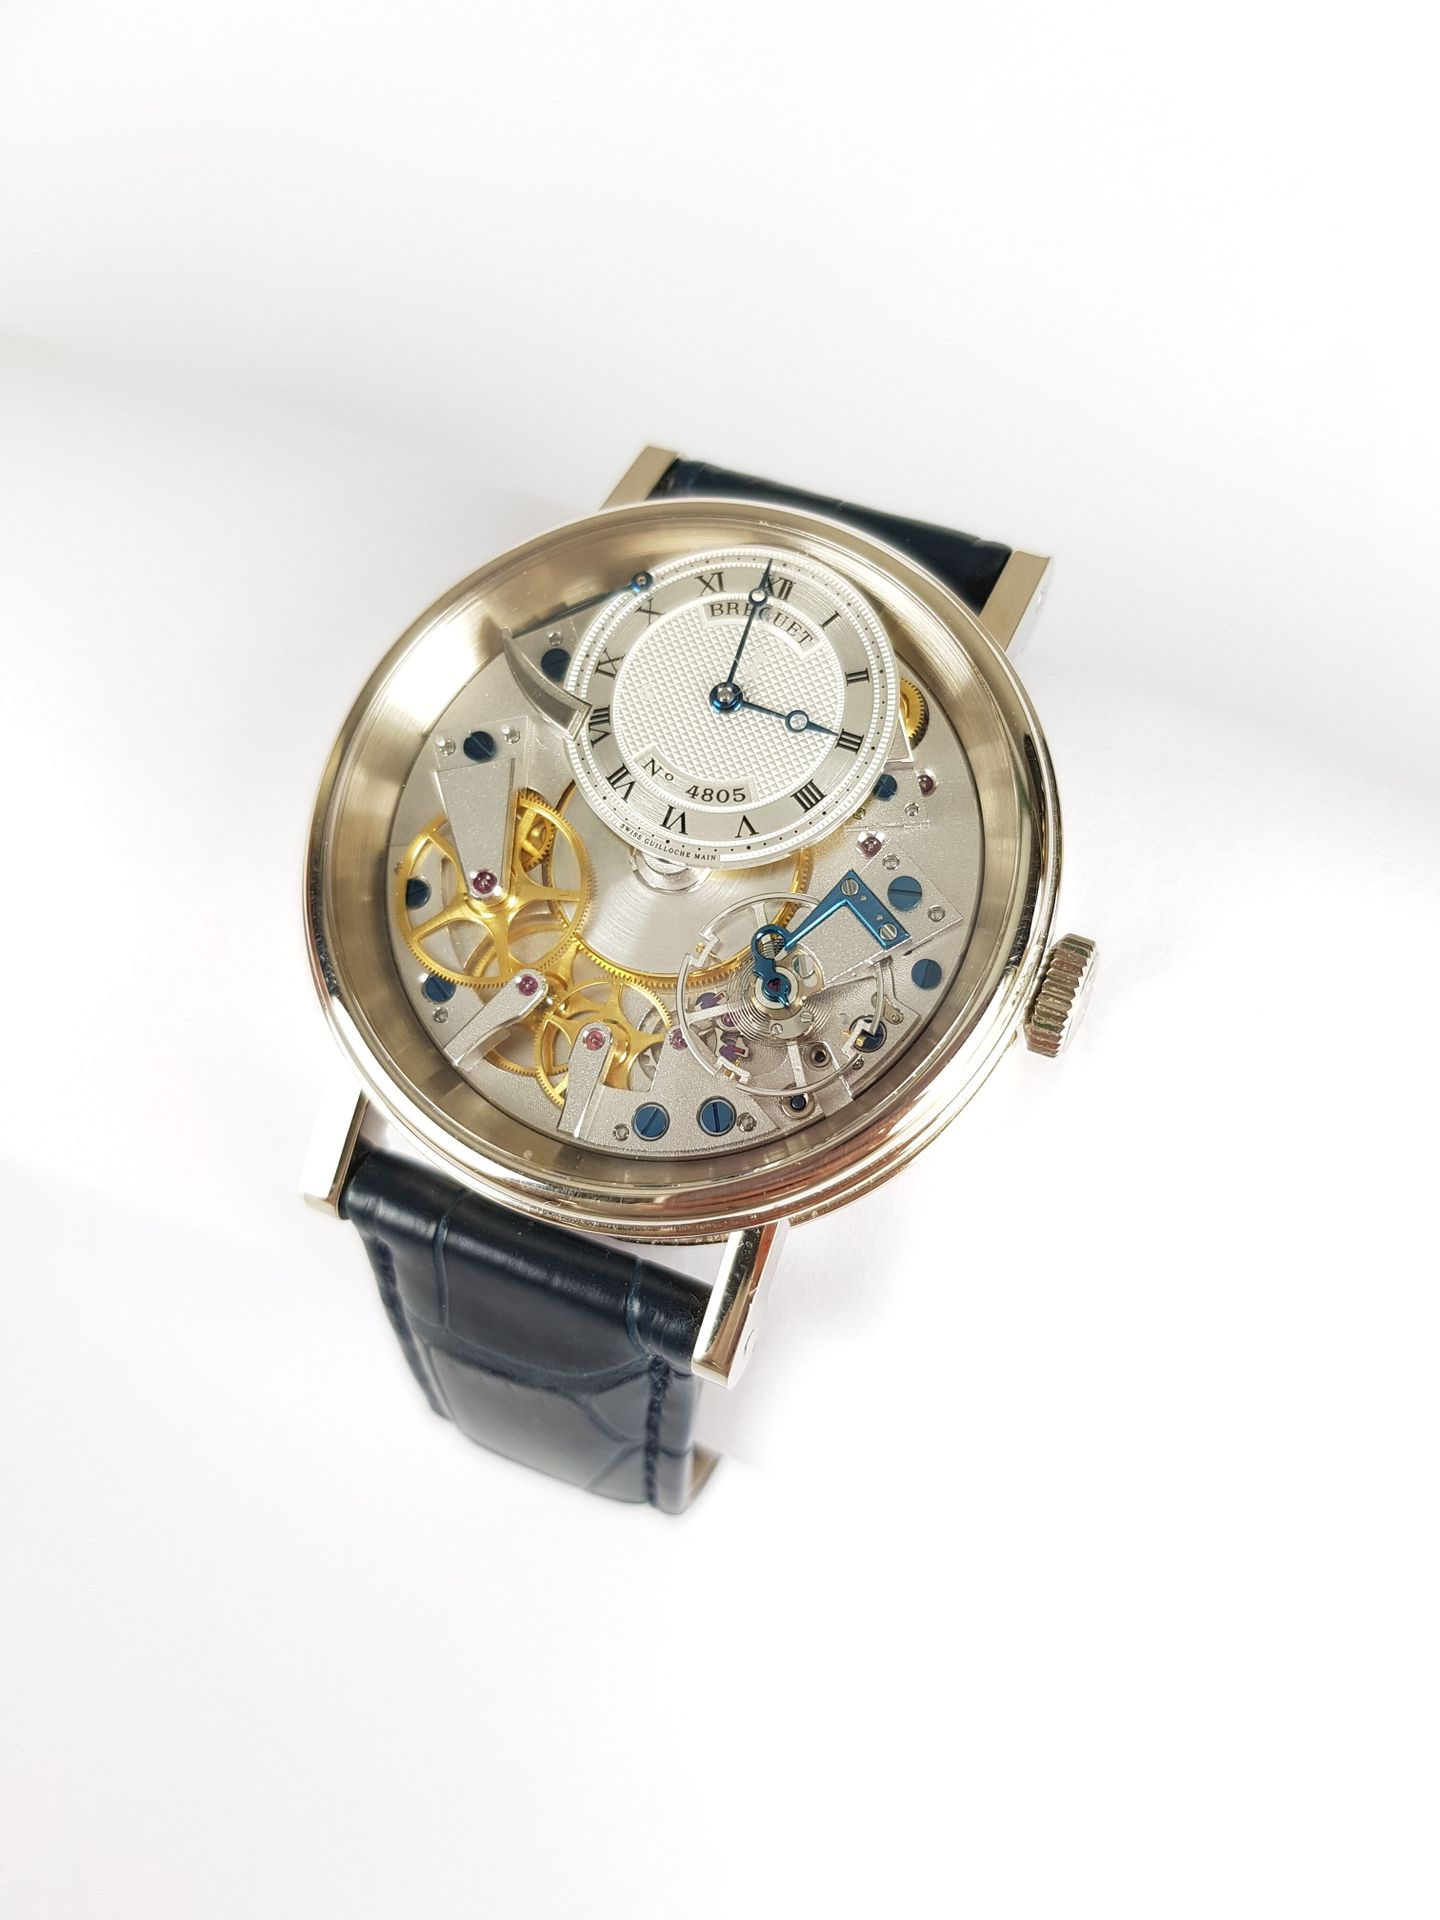 Null Precio : 6.000 euros

BREGUET

Tradición GM

Reloj de oro blanco de 750 mil&hellip;